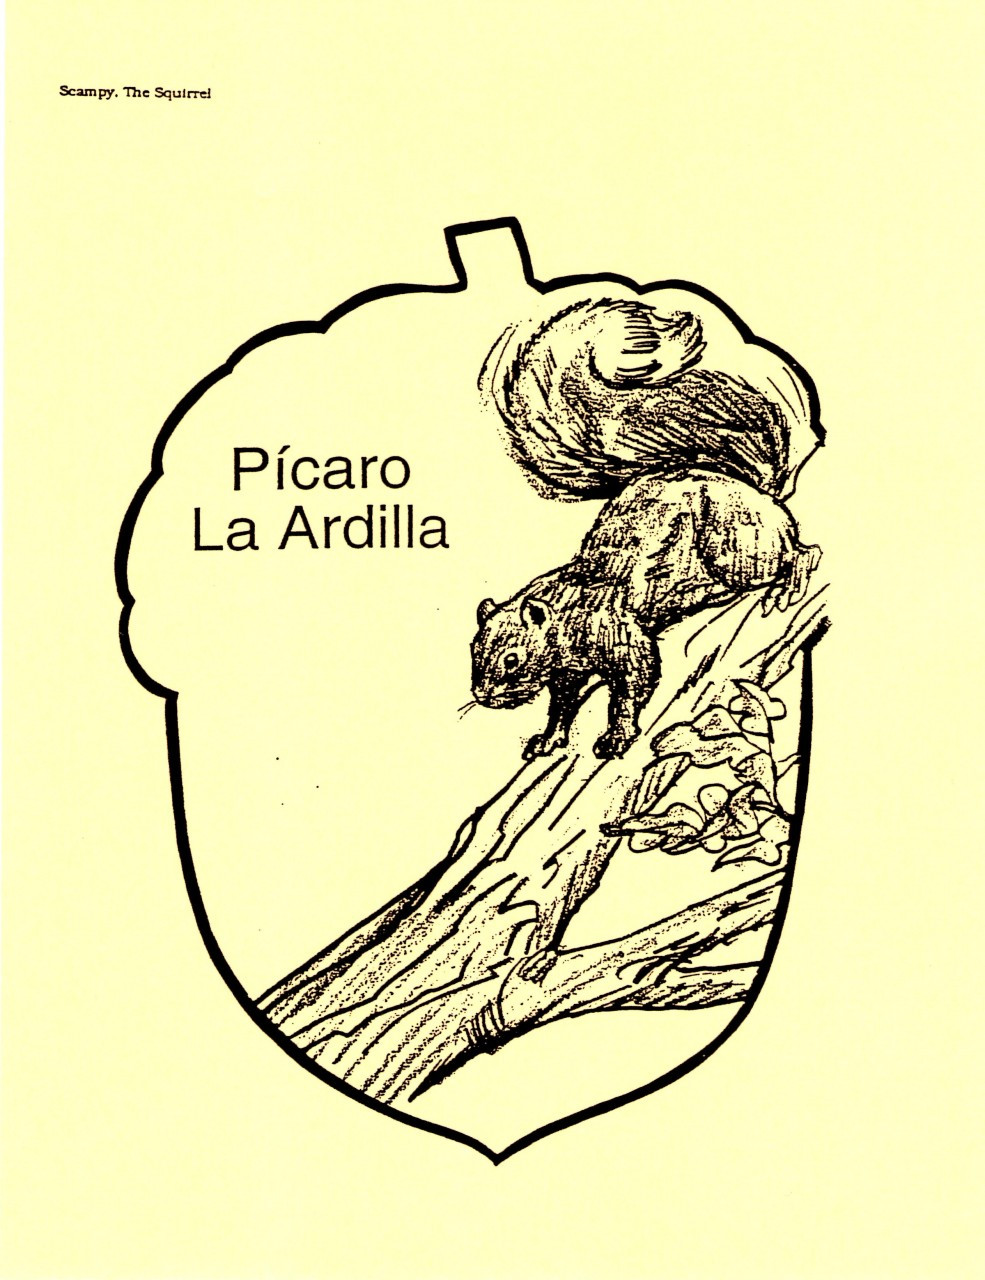 Picaro La Ardilla (Scampy The Squirrel)